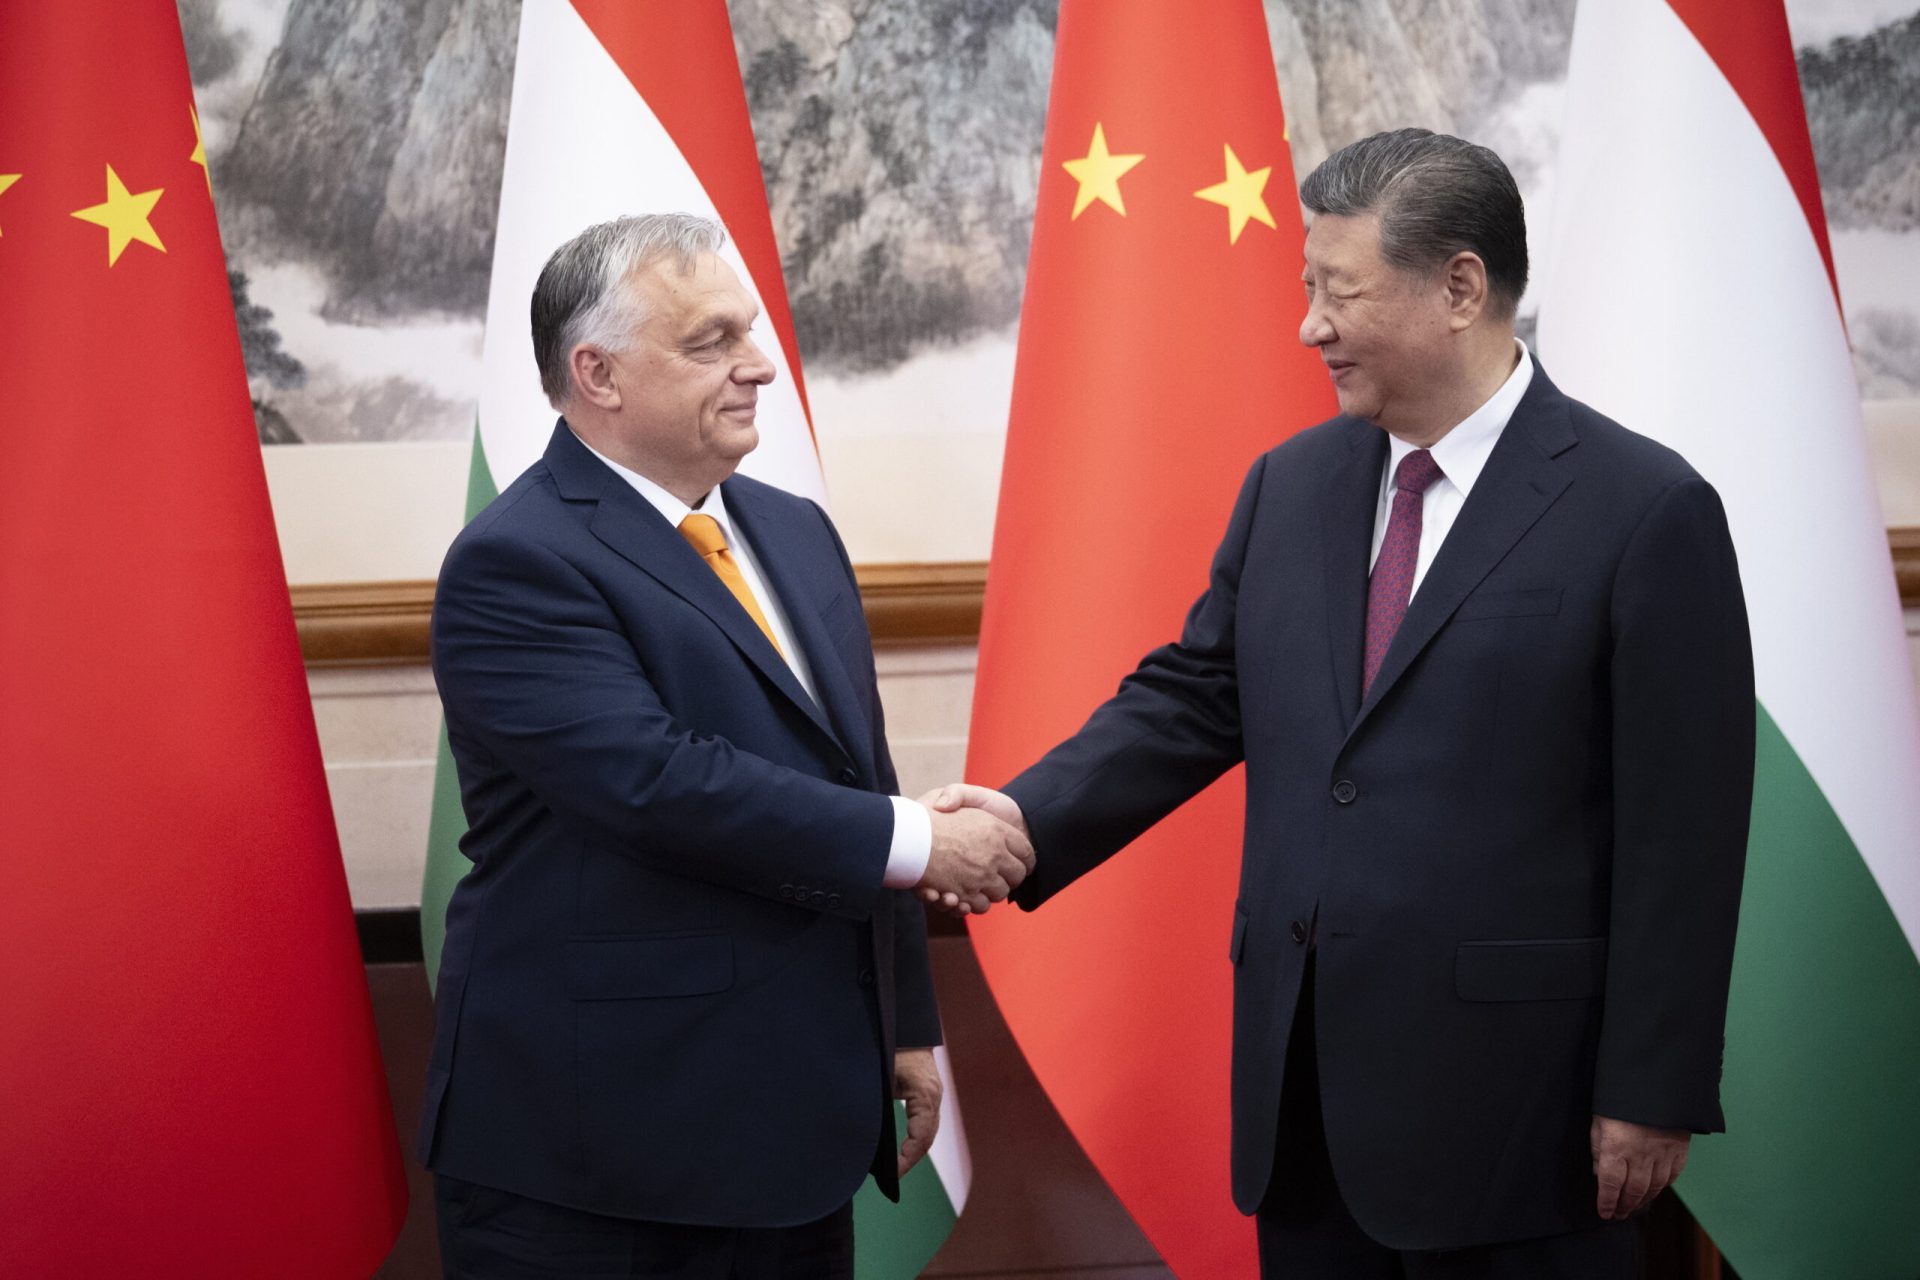 Az erőteljes cím: “Orbán Viktor látványos bevonulása Kínába – exkluzív fotókkal!